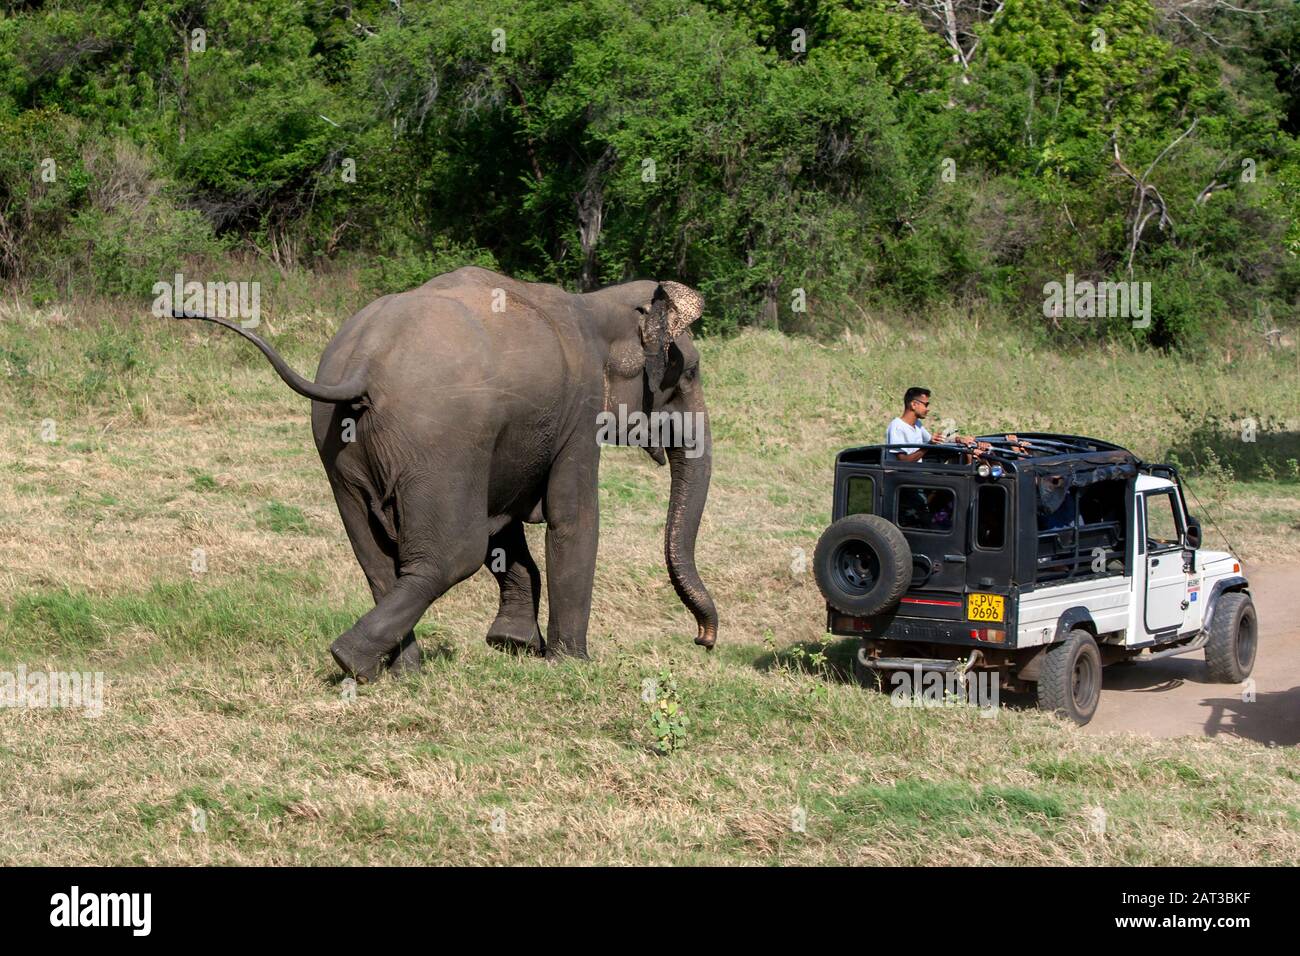 Un éléphant sauvage se charge d'une jeep safari adjacente à la brousse dans le parc national de Minneriya, dans le centre du Sri Lanka. Banque D'Images